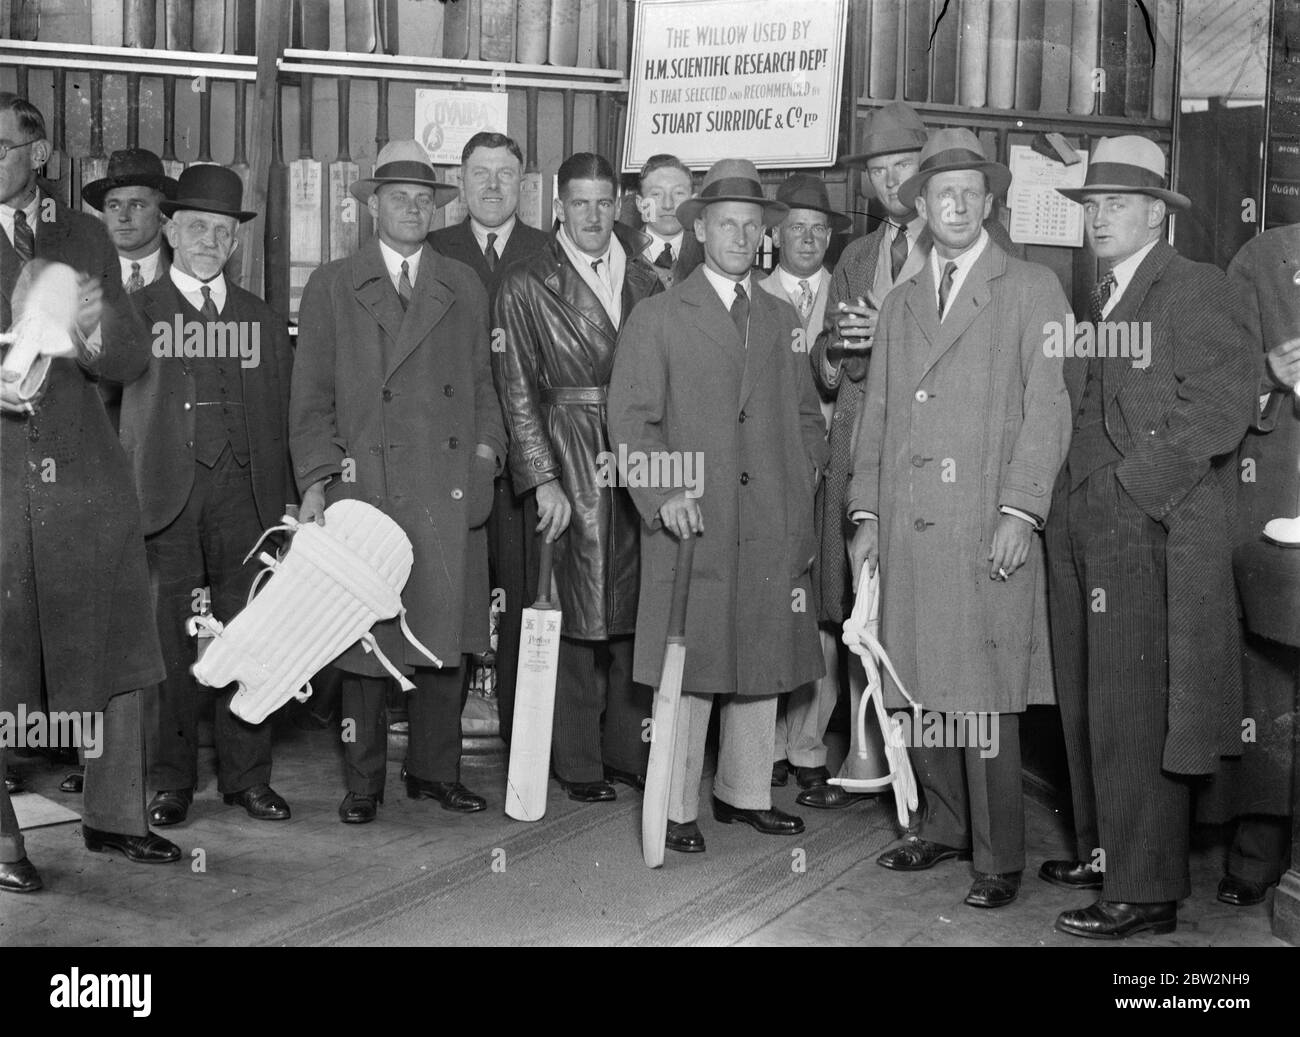 El equipo australiano de Ashes Touring compra su equipo en los outfitters deportivos de Londres. Los turistas fueron capitaneados por Bill Woodfull, . La foto muestra al equipo fotografiado en la tienda. 26 de abril de 1934 . Foto de stock